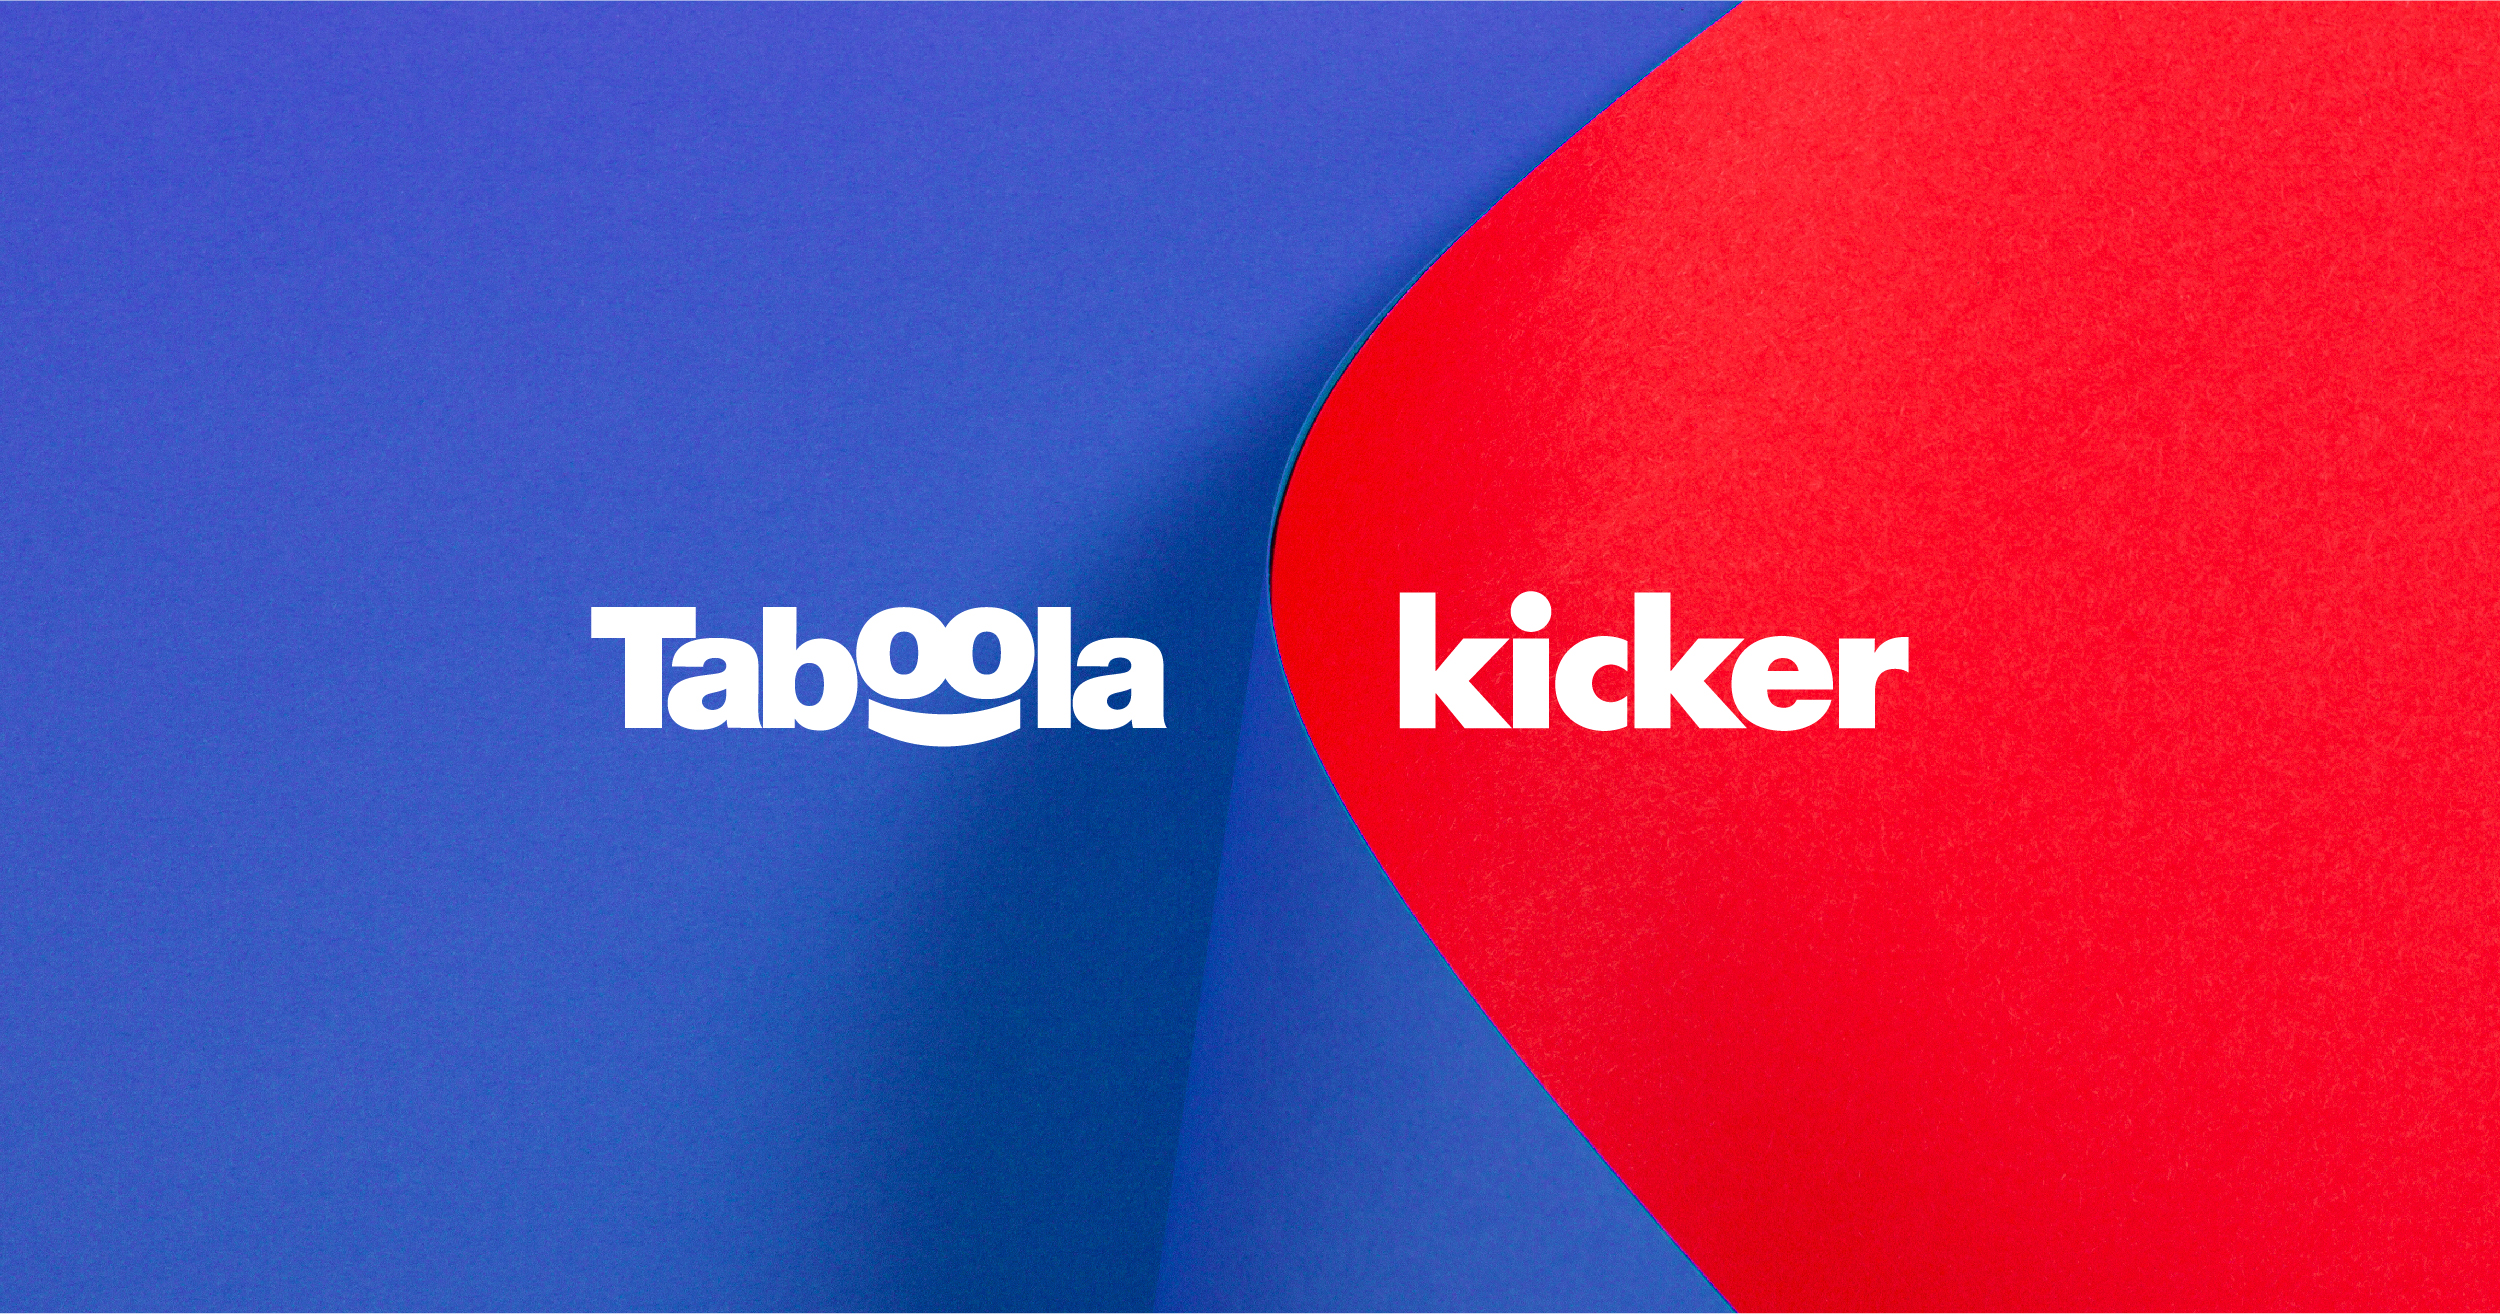 Taboola ist wieder präferierter Partner von kicker und sichert sich exklusiven Dreijahresvertrag, Taboola, Pressemitteilung